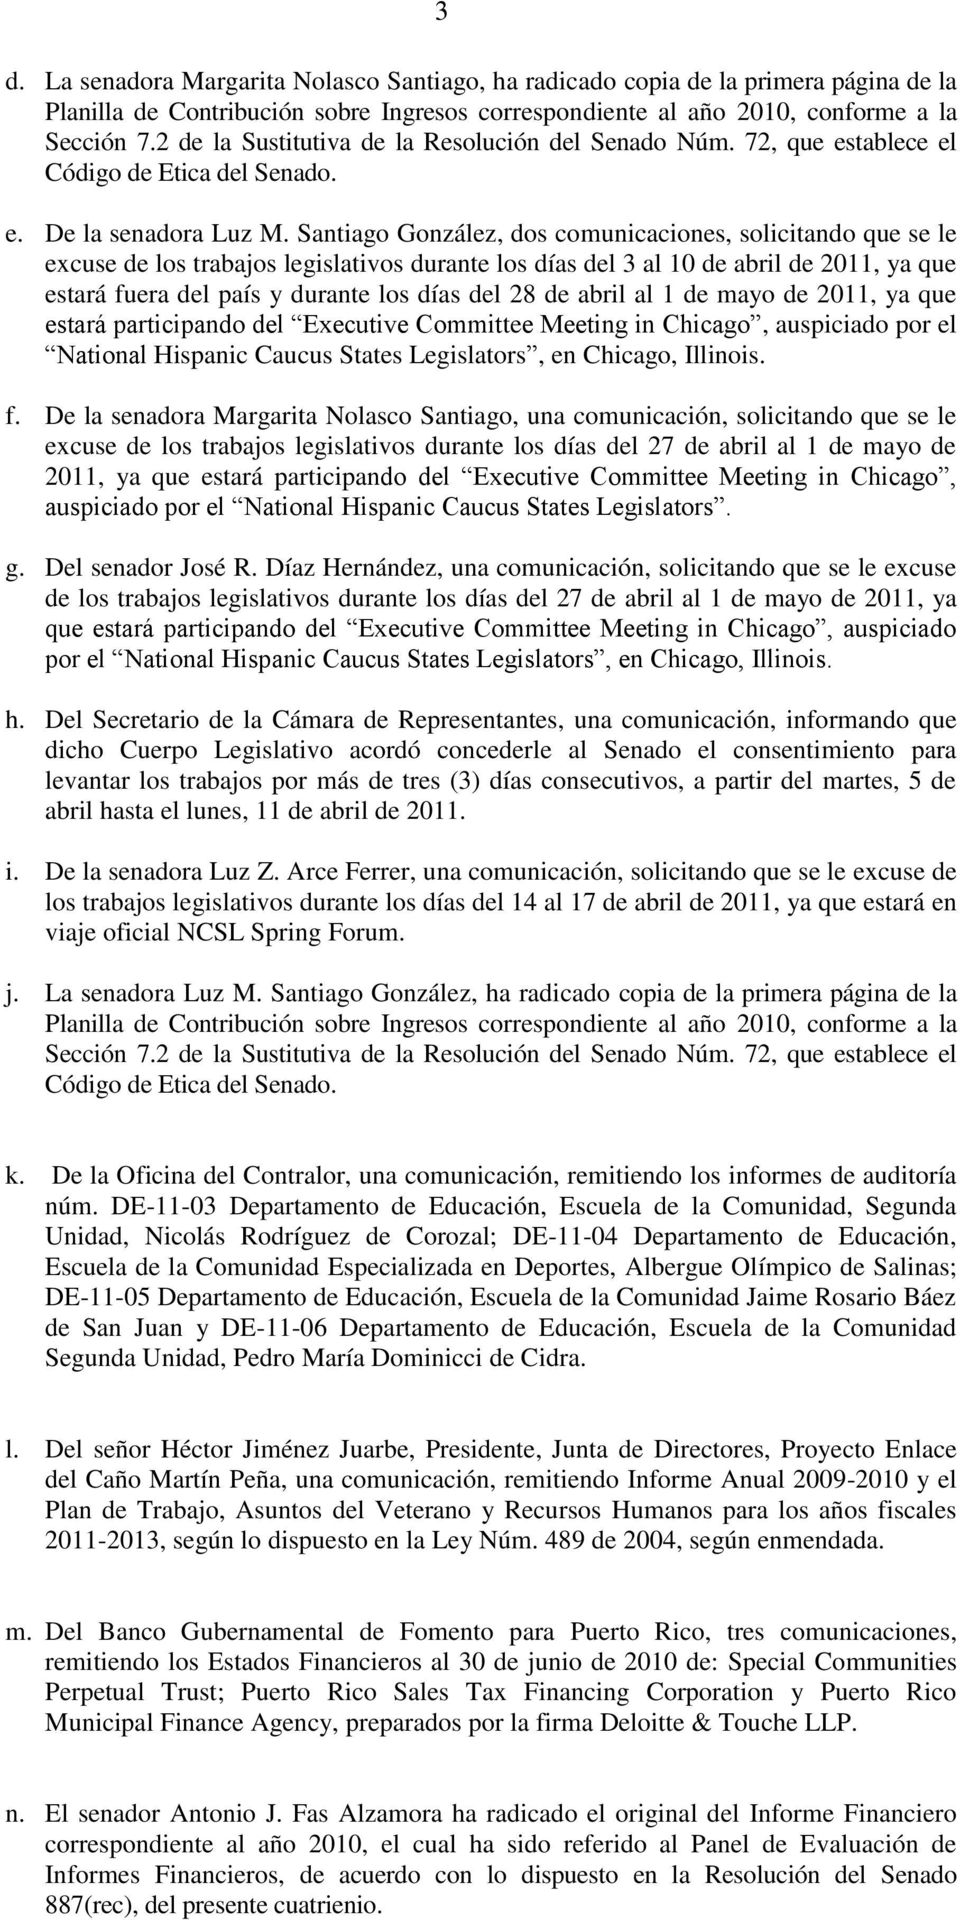 Santiago González, dos comunicaciones, solicitando que se le excuse de los trabajos legislativos durante los días del 3 al 10 de abril de 2011, ya que estará fuera del país y durante los días del 28